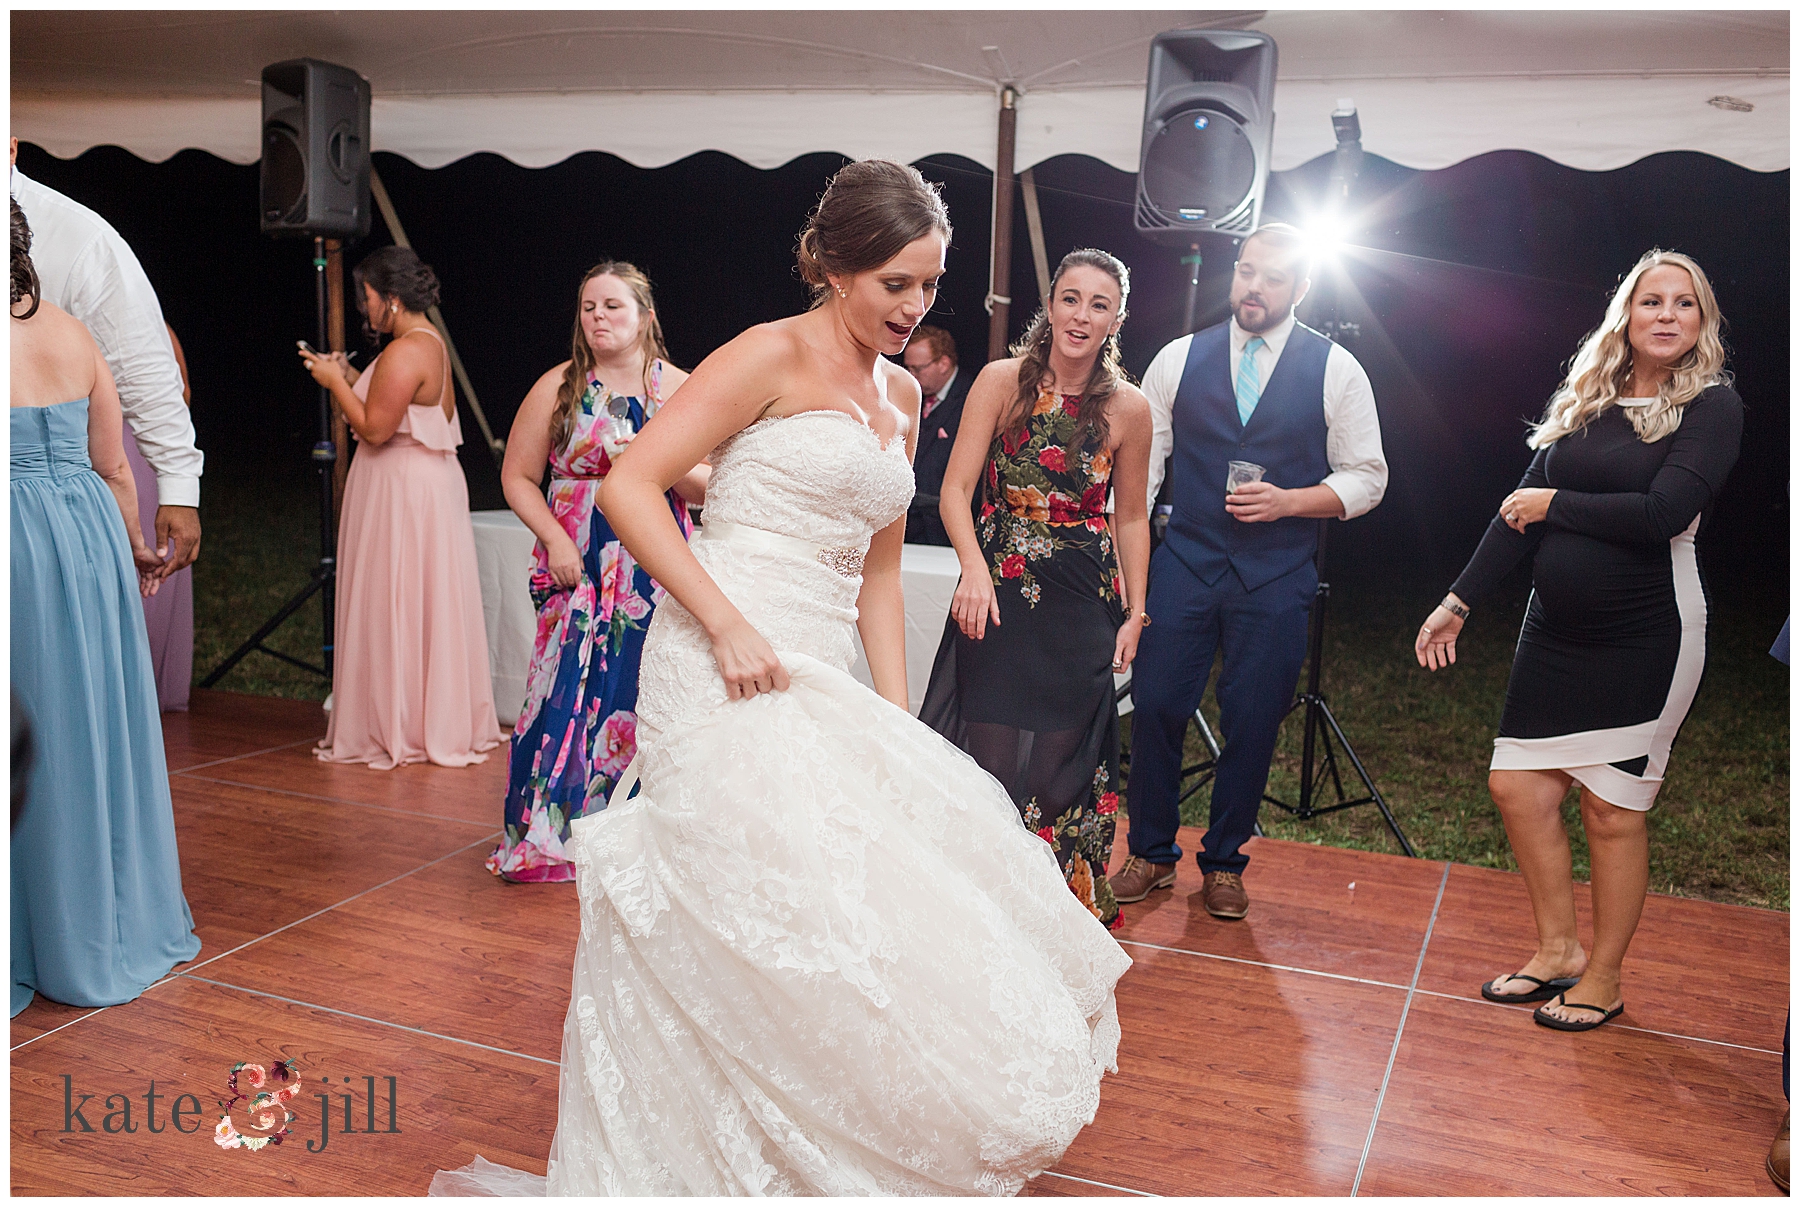 Bride dancing at reception